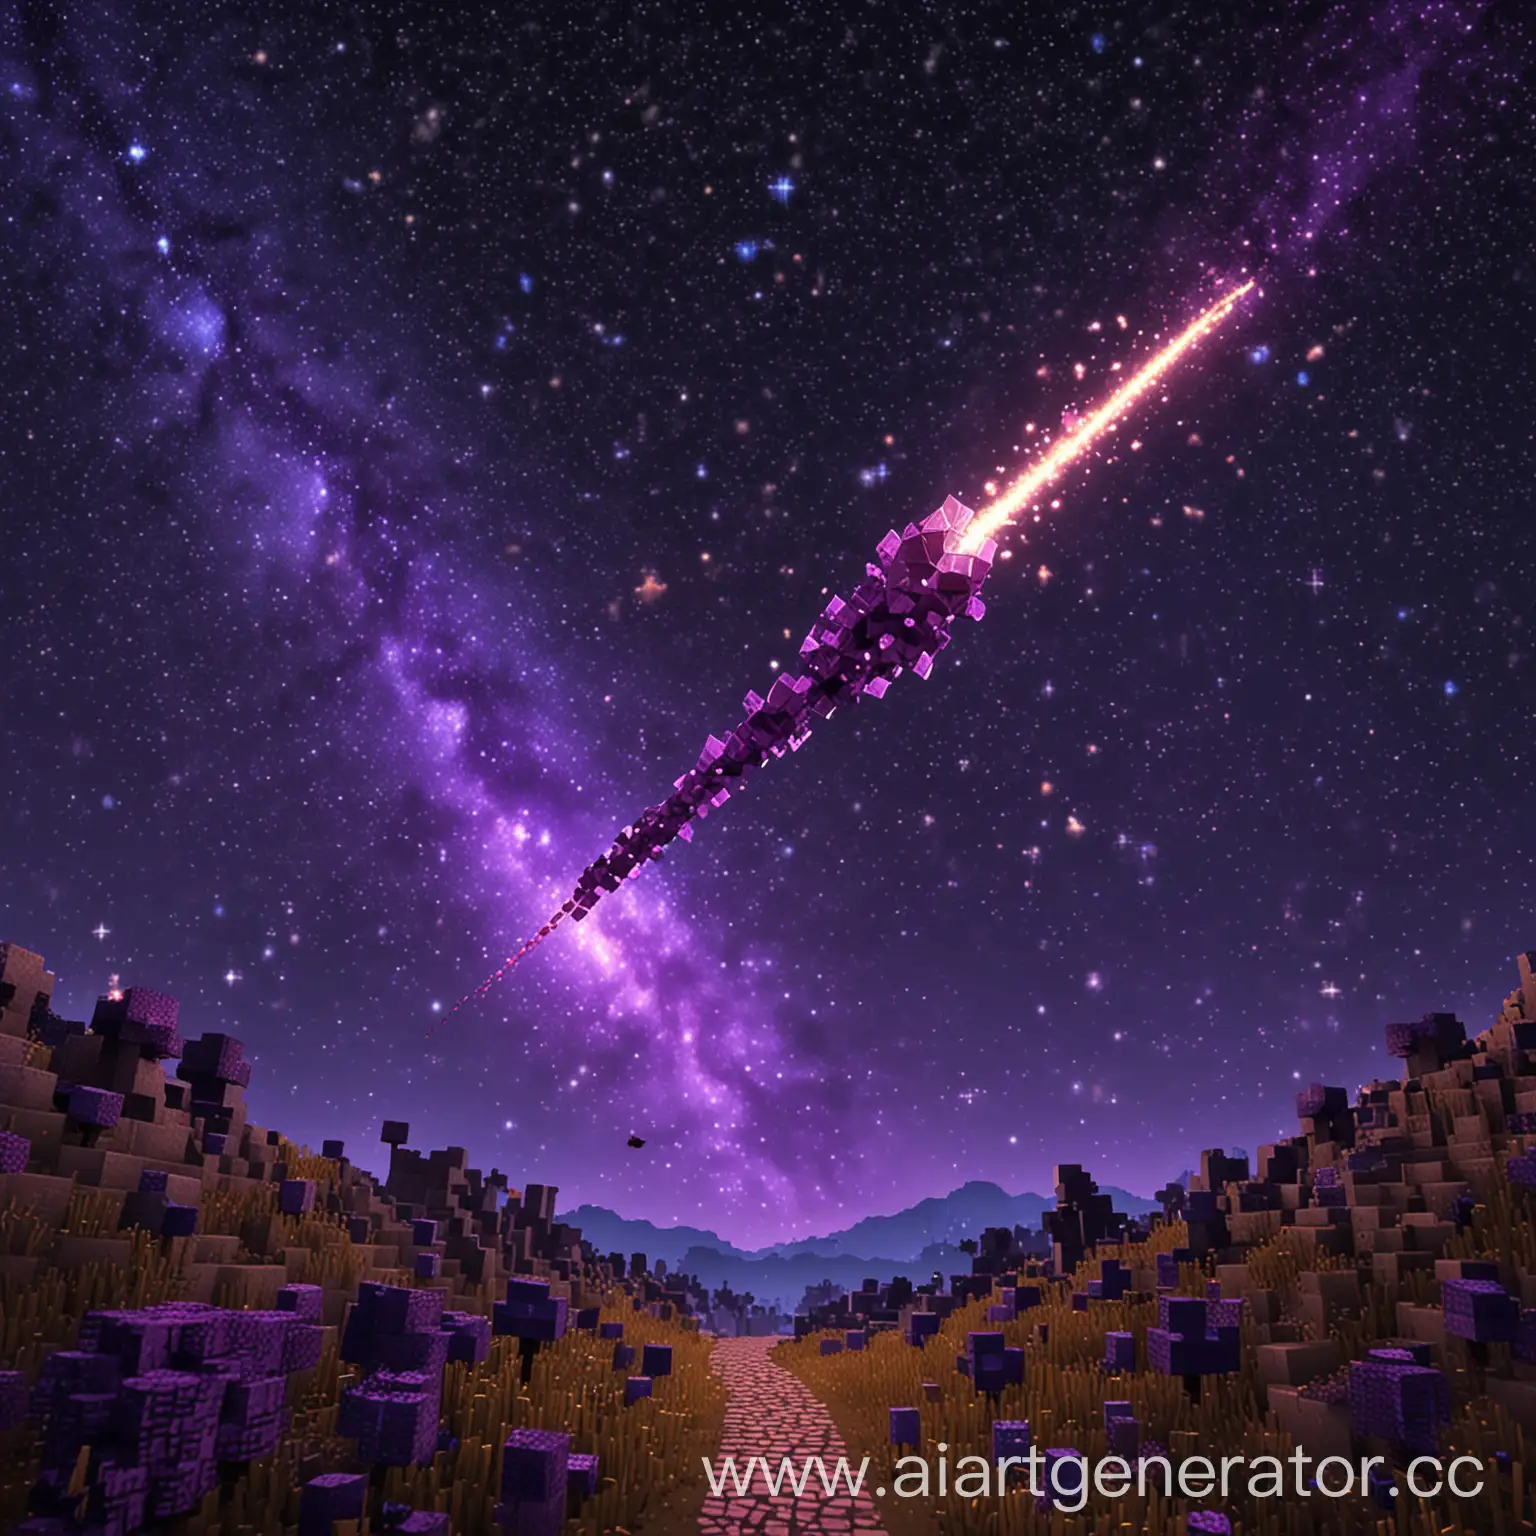 Майнкрафт комета на фоне фиолетового звездного неба в майнкрафт летит и оставляет за собой блестящий путь